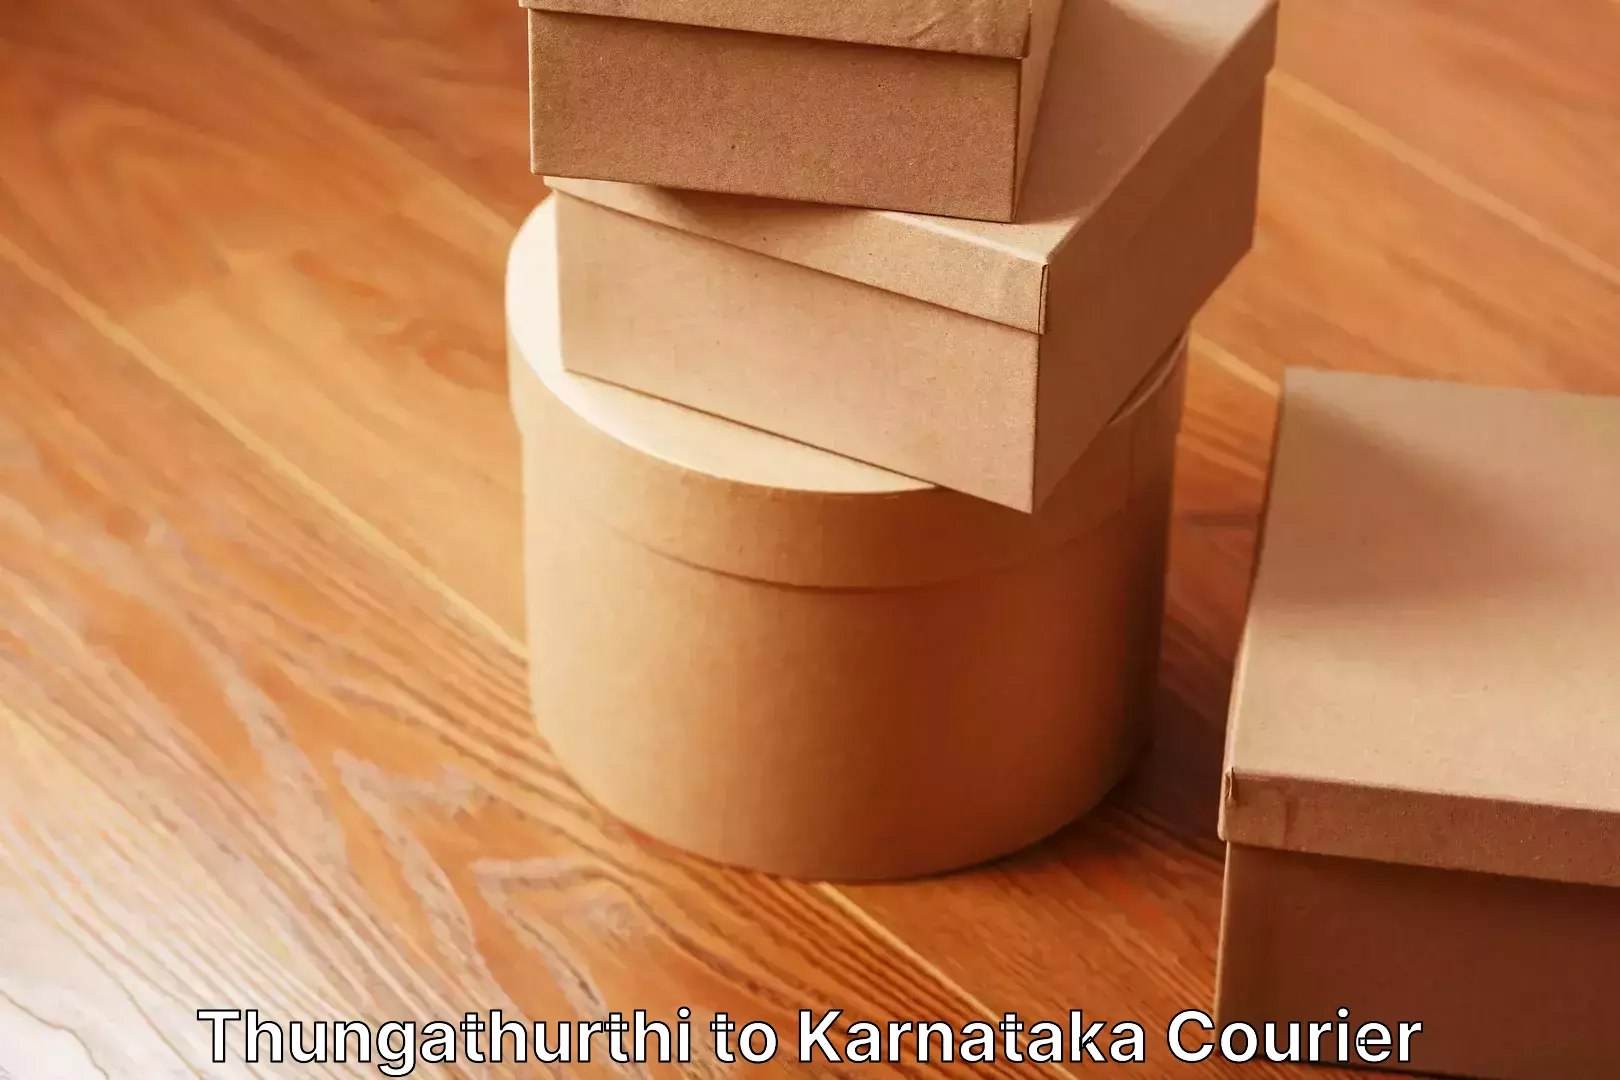 Dependable moving services Thungathurthi to Karnataka